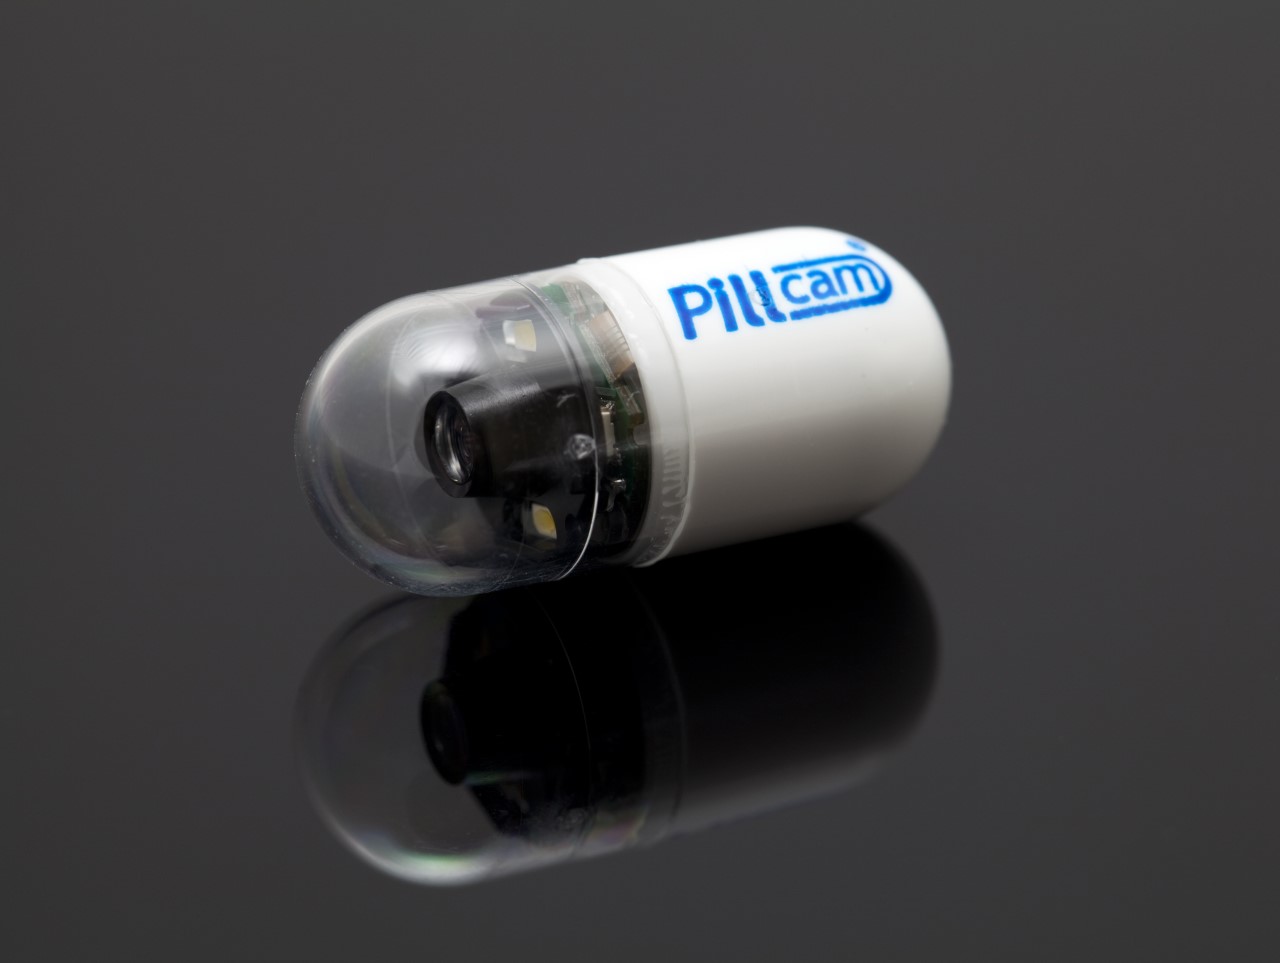 Capsule camera (Pillcam)